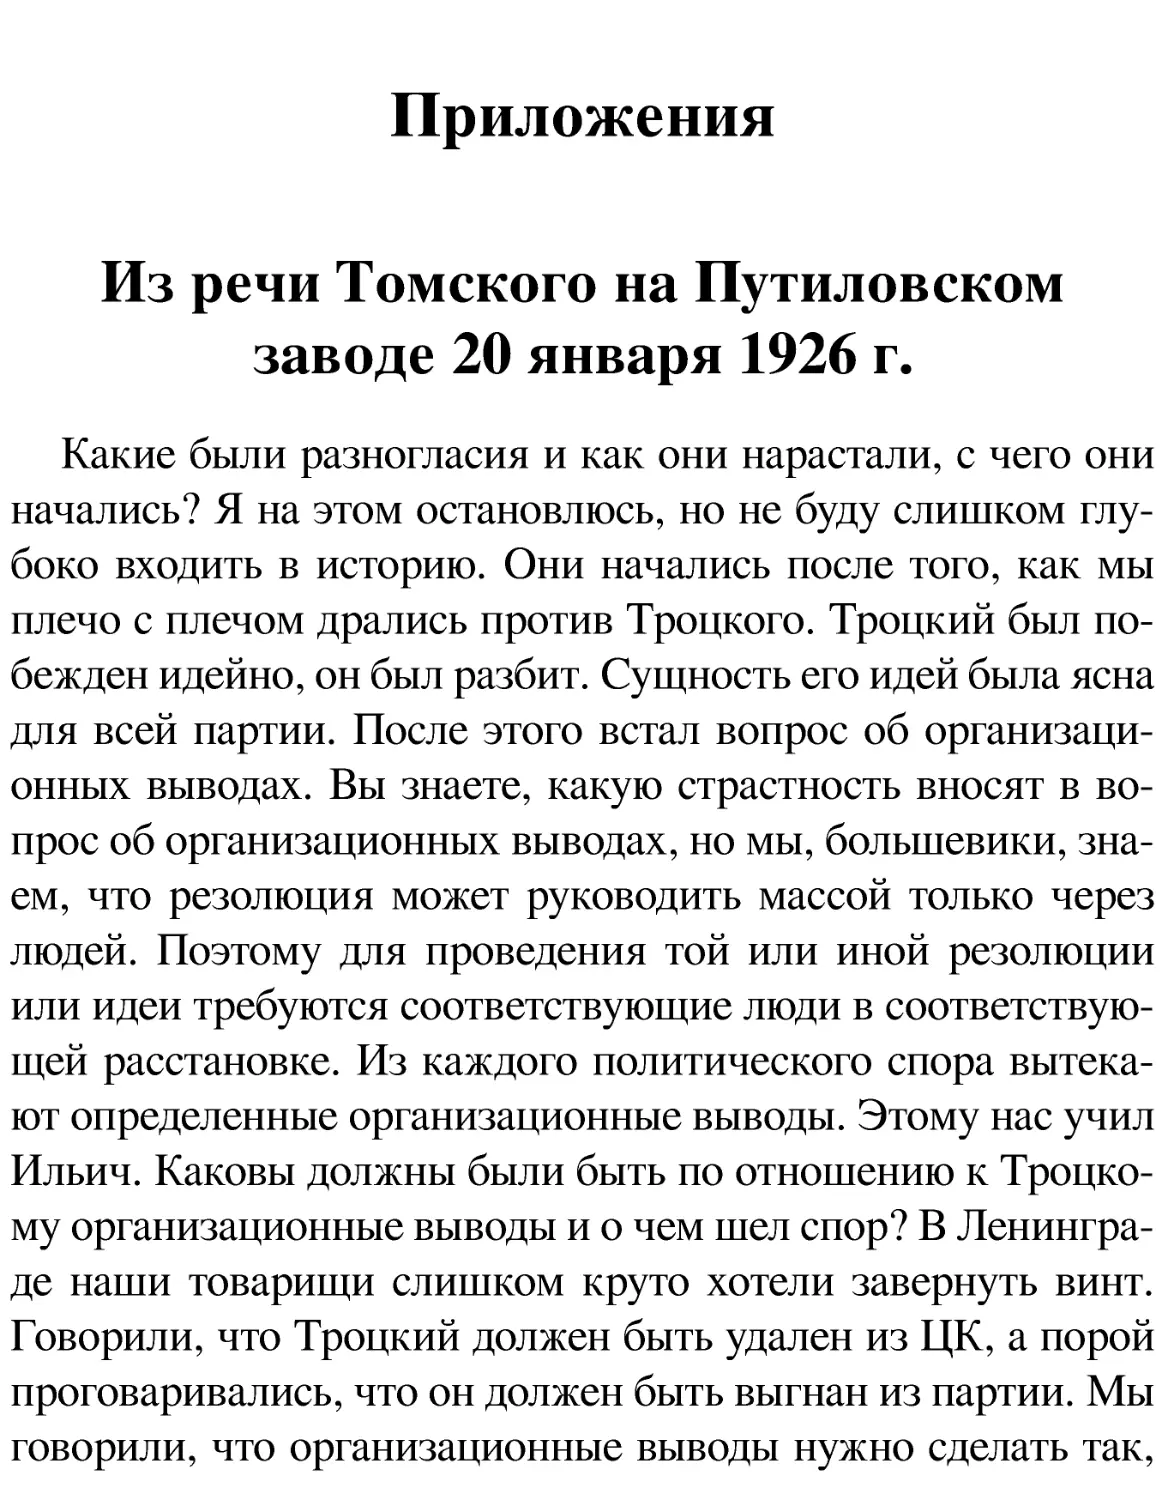 Приложения
Из речи Томского на Путиловском заводе 20 января 1926 г.